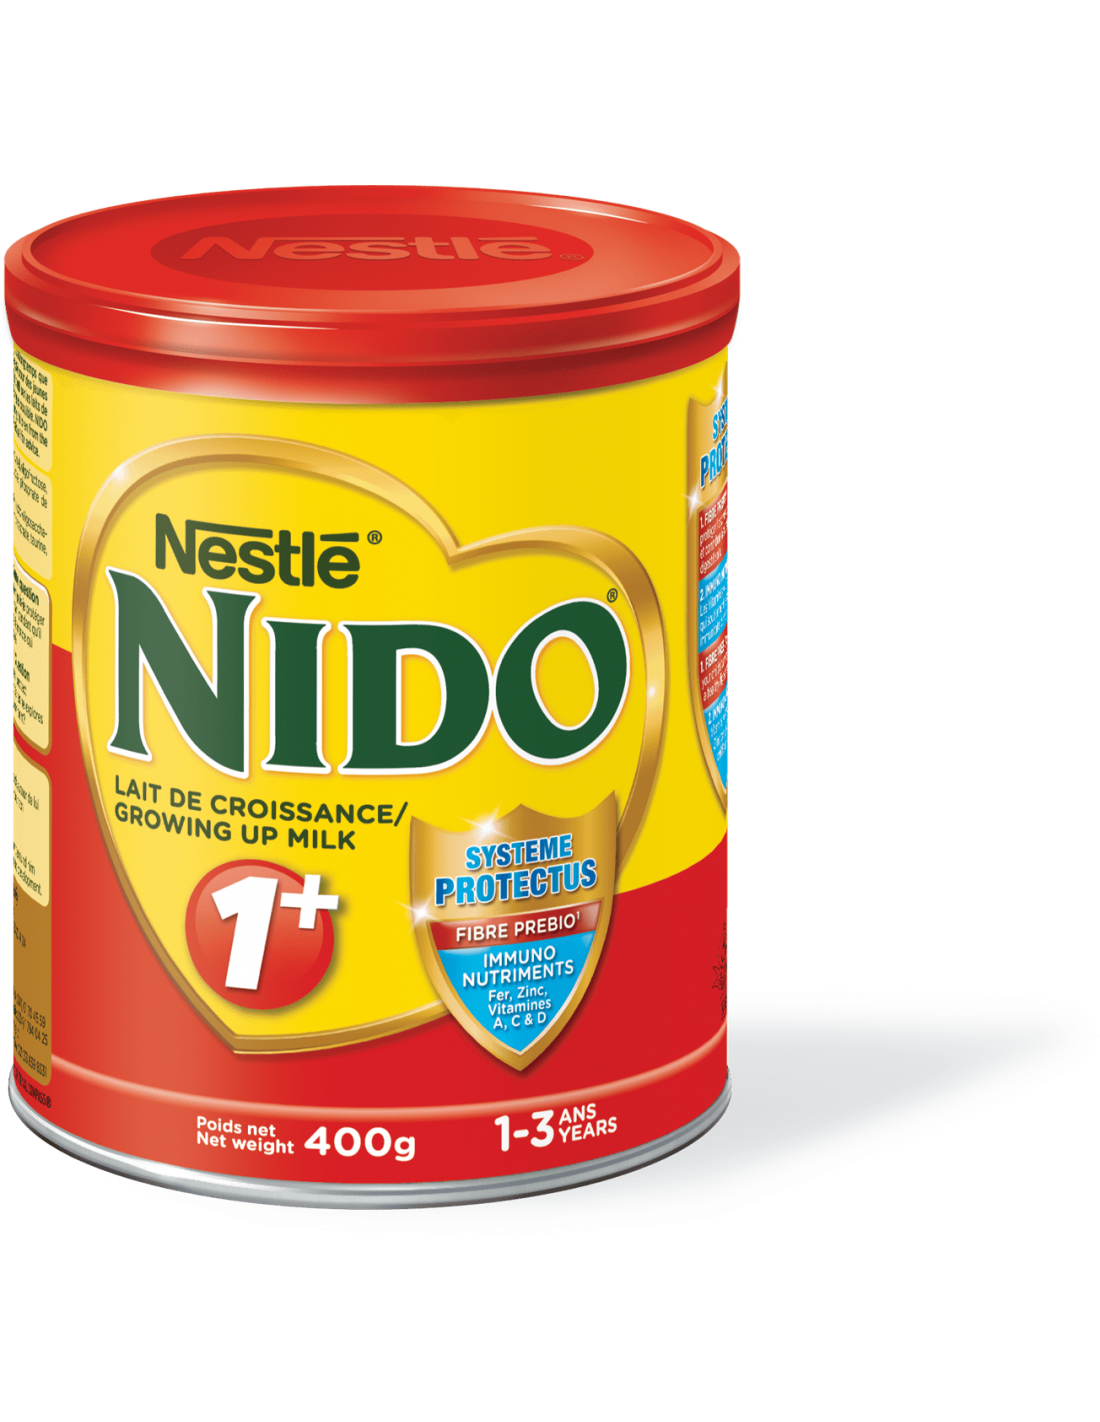 Nestlé Nido